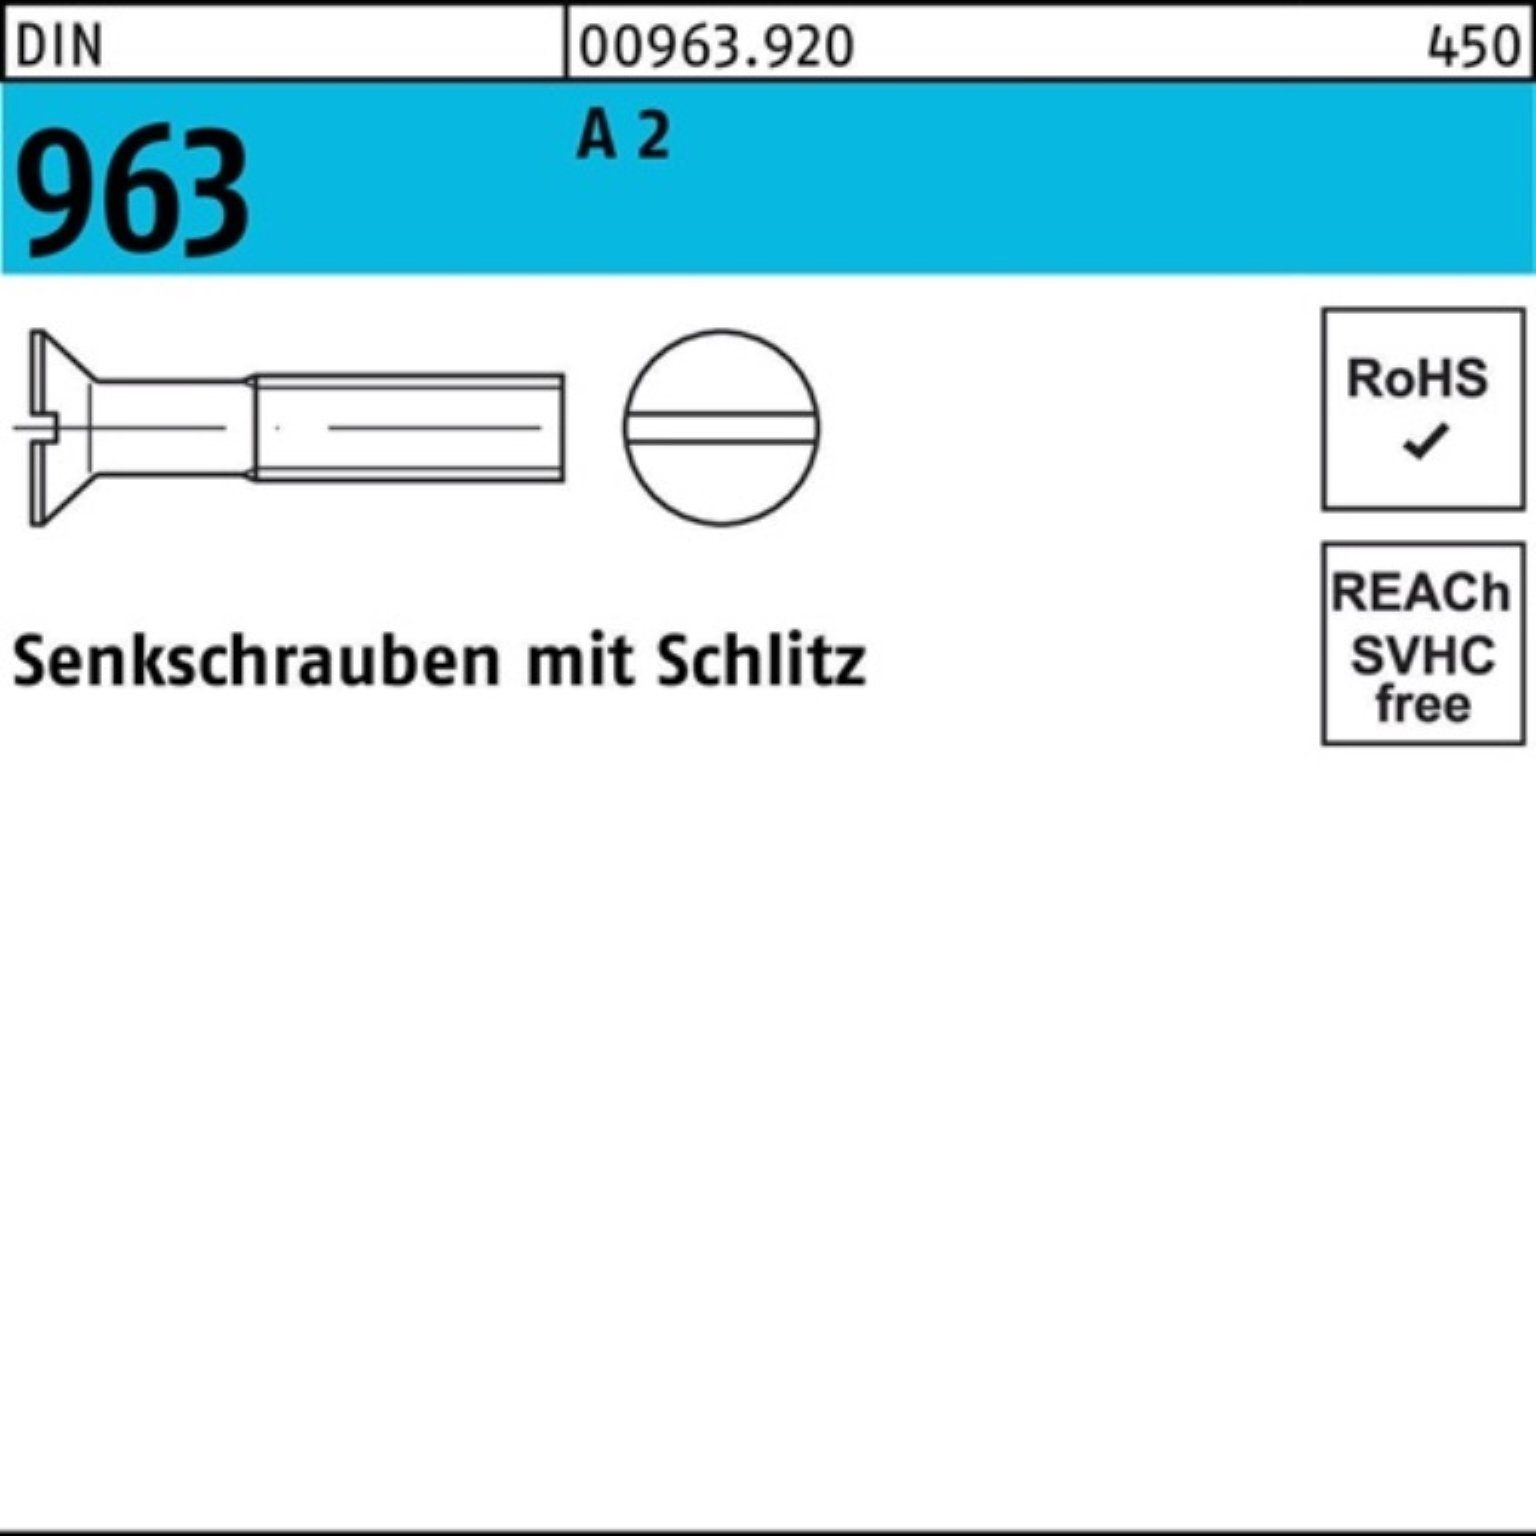 1000 Senkschraube A Schlitz 2 6 963 Reyher M2x DIN Pack DIN Senkschraube Stück 1000er 963